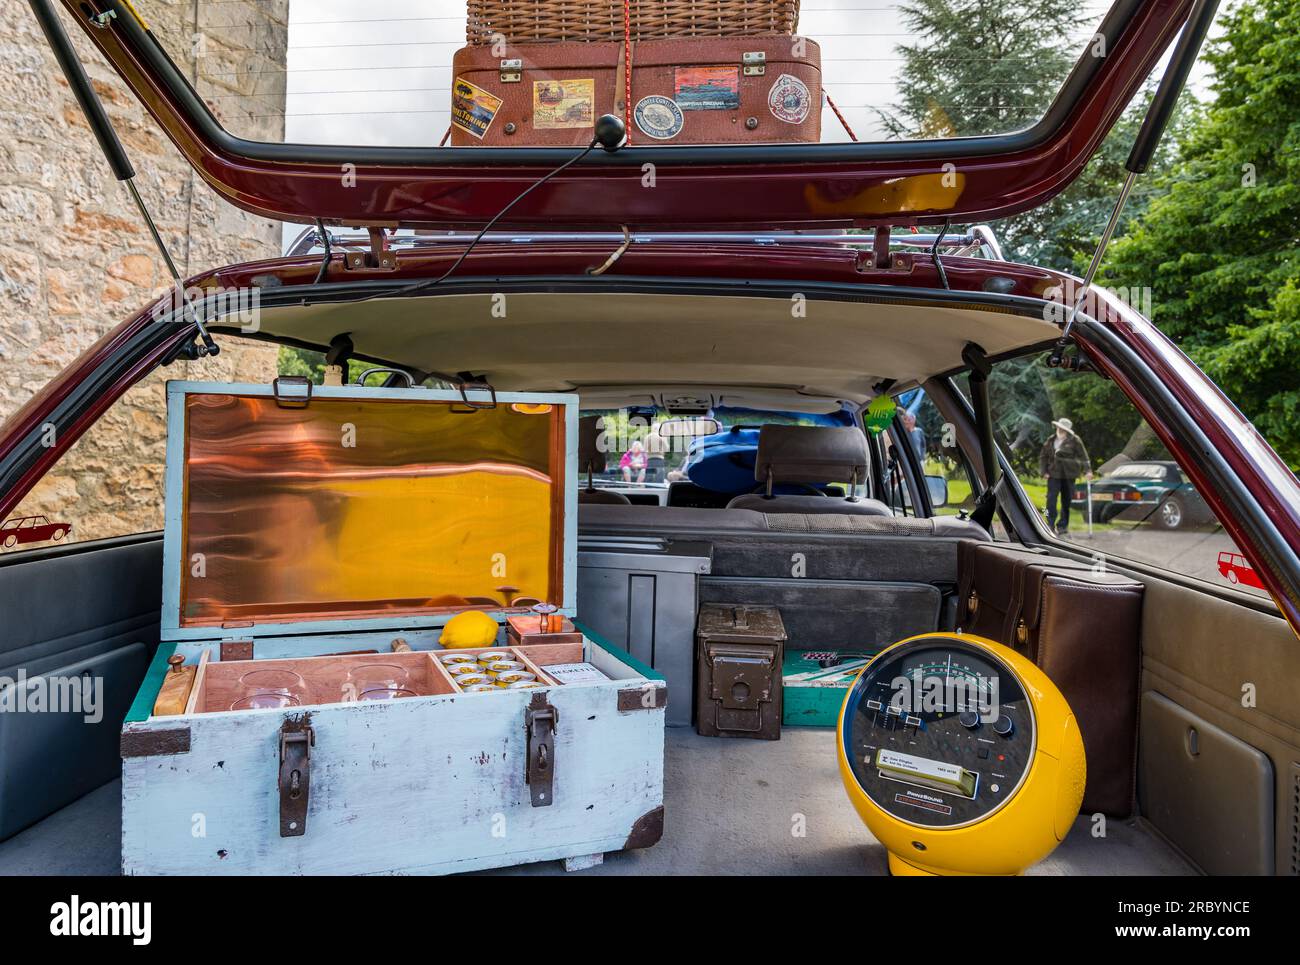 Ford Granada Kofferraum offen mit altmodischem Getränkeschrank und altmodischem Radio, Wheels of Yesteryear, Lennoxlove Estate, East Lothian, Schottland, UK Stockfoto